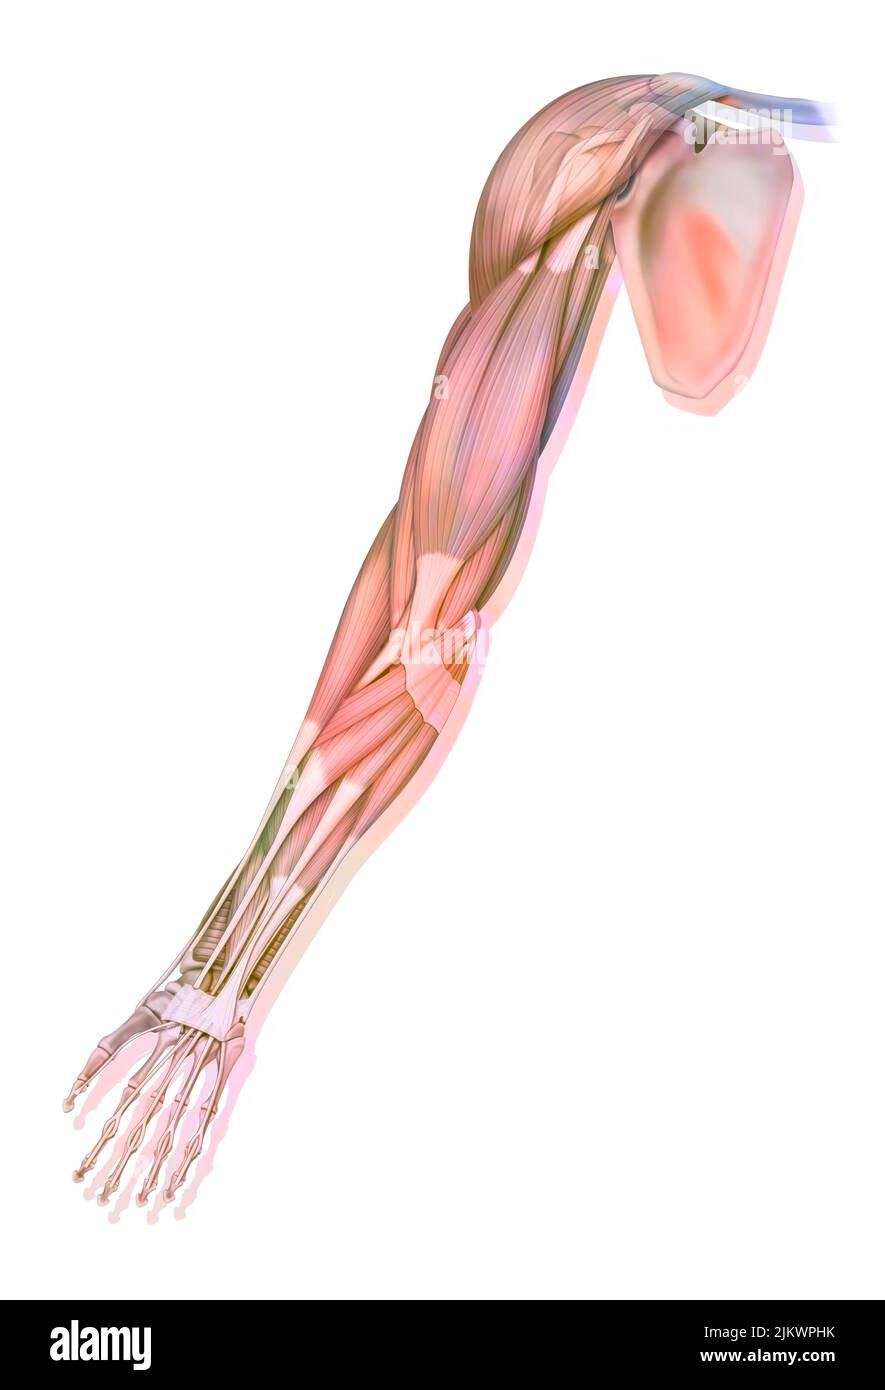 Die Muskeln der oberen rechten Extremität in der anterioren Ansicht. Stockfoto